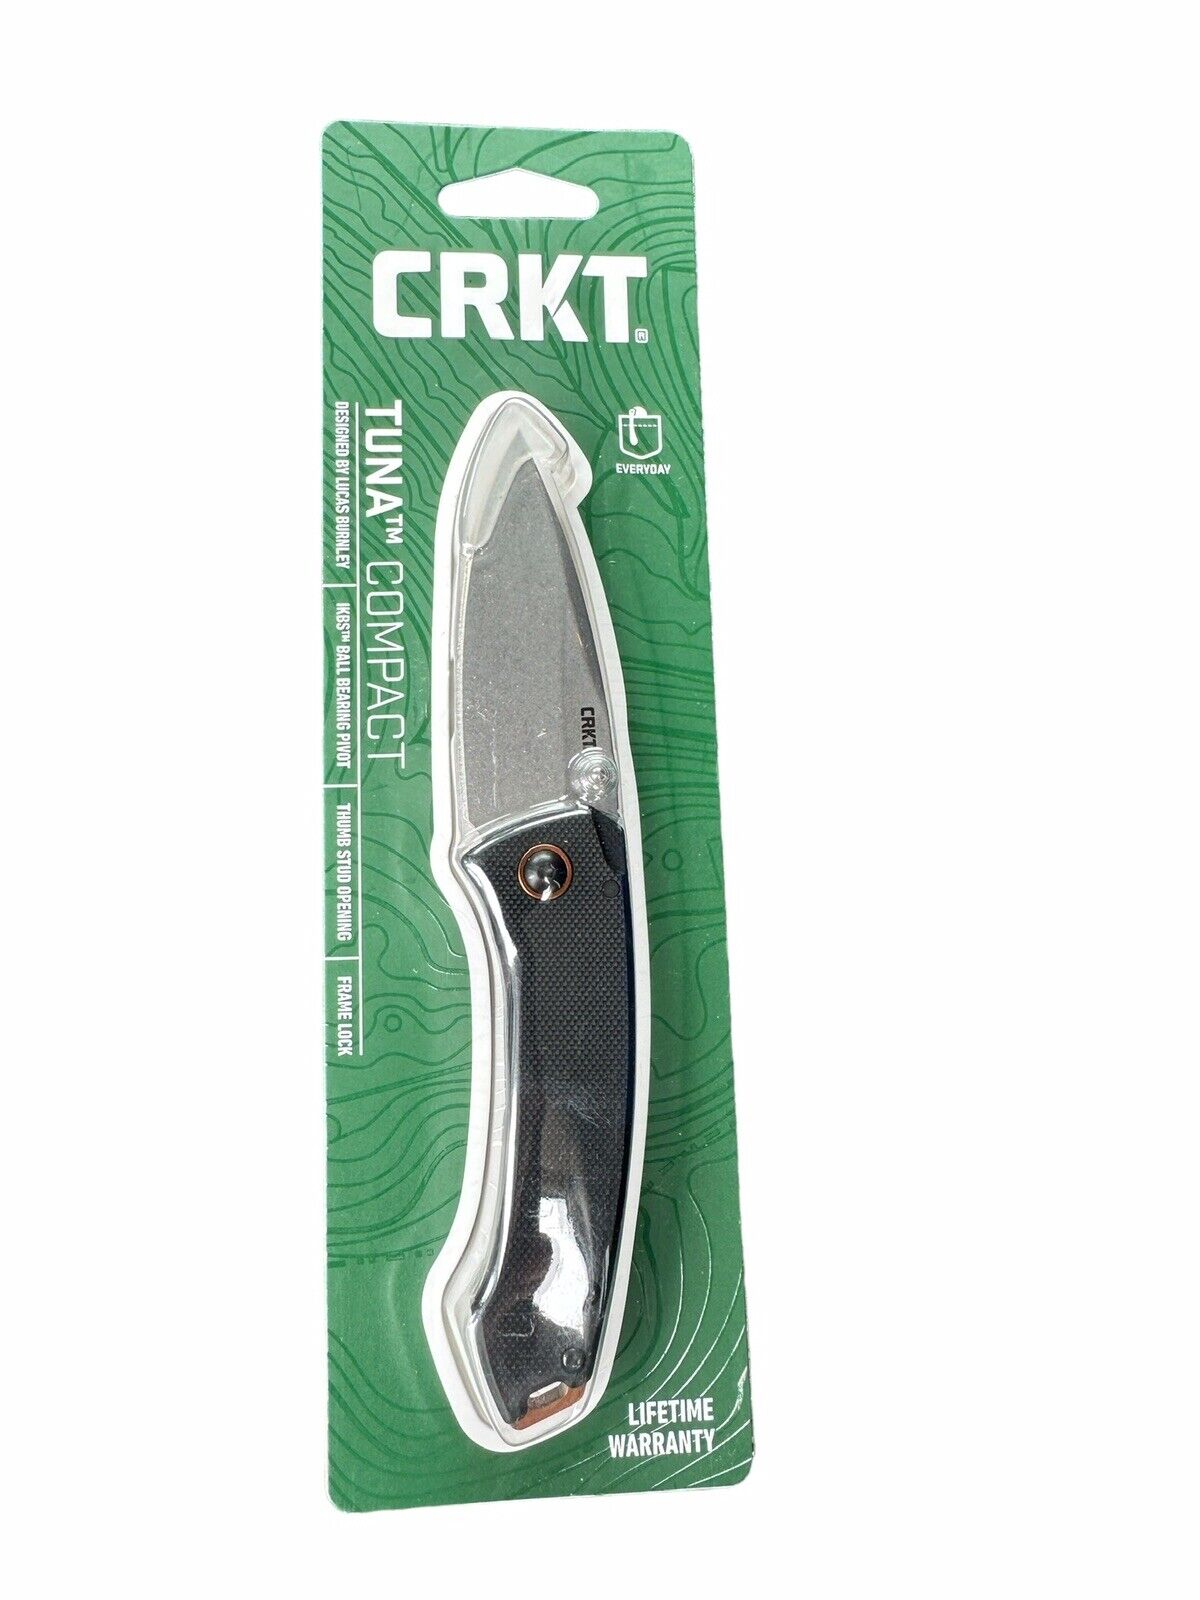 CRKT Lucas Burnley Design 2522 Tuna Compact Folding Pocket Knife